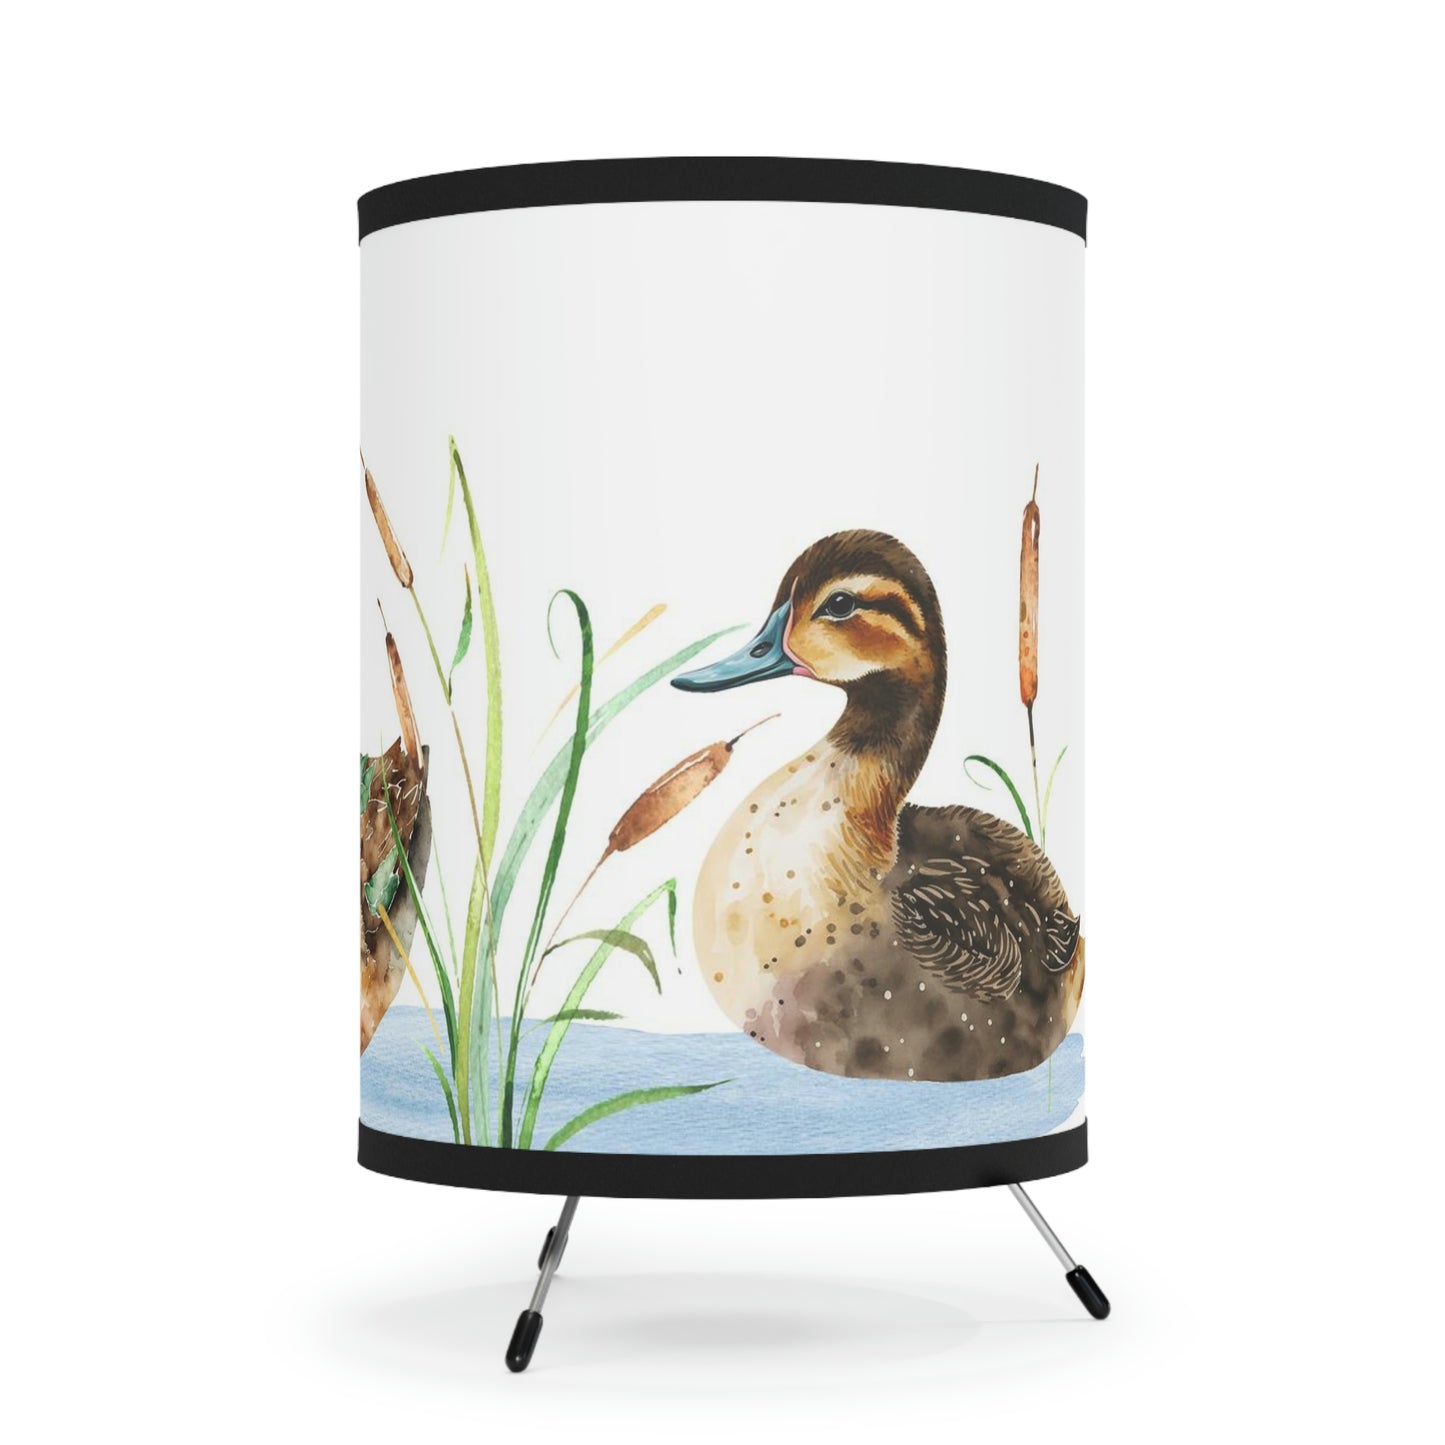 Ducks nursery Lamp, Duck nursery decor - Little Ducklings